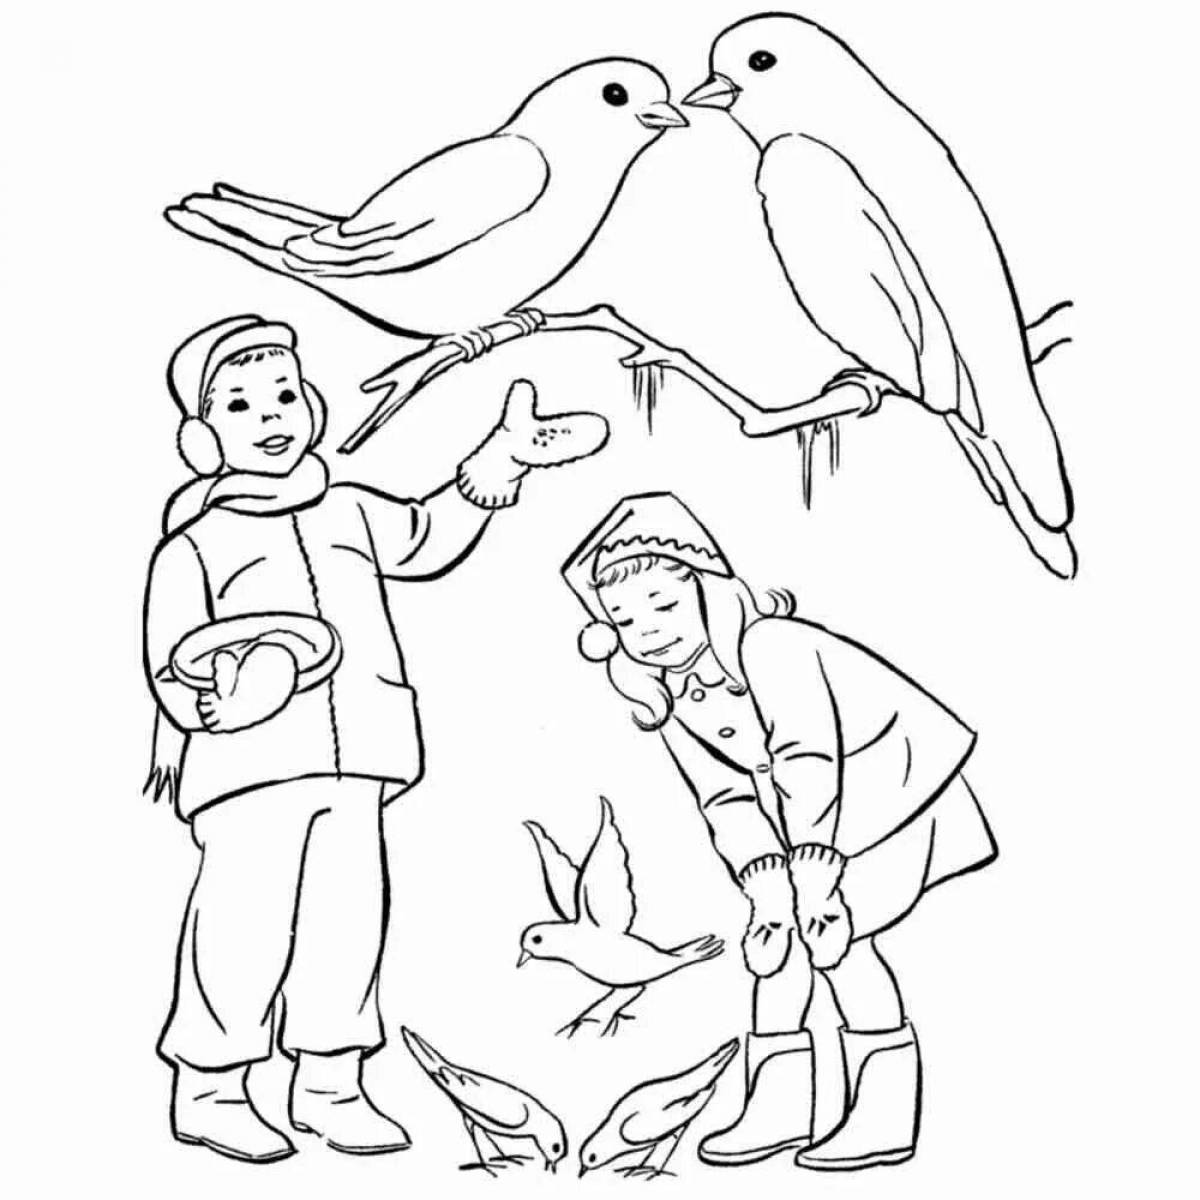 How to help birds in winter #3